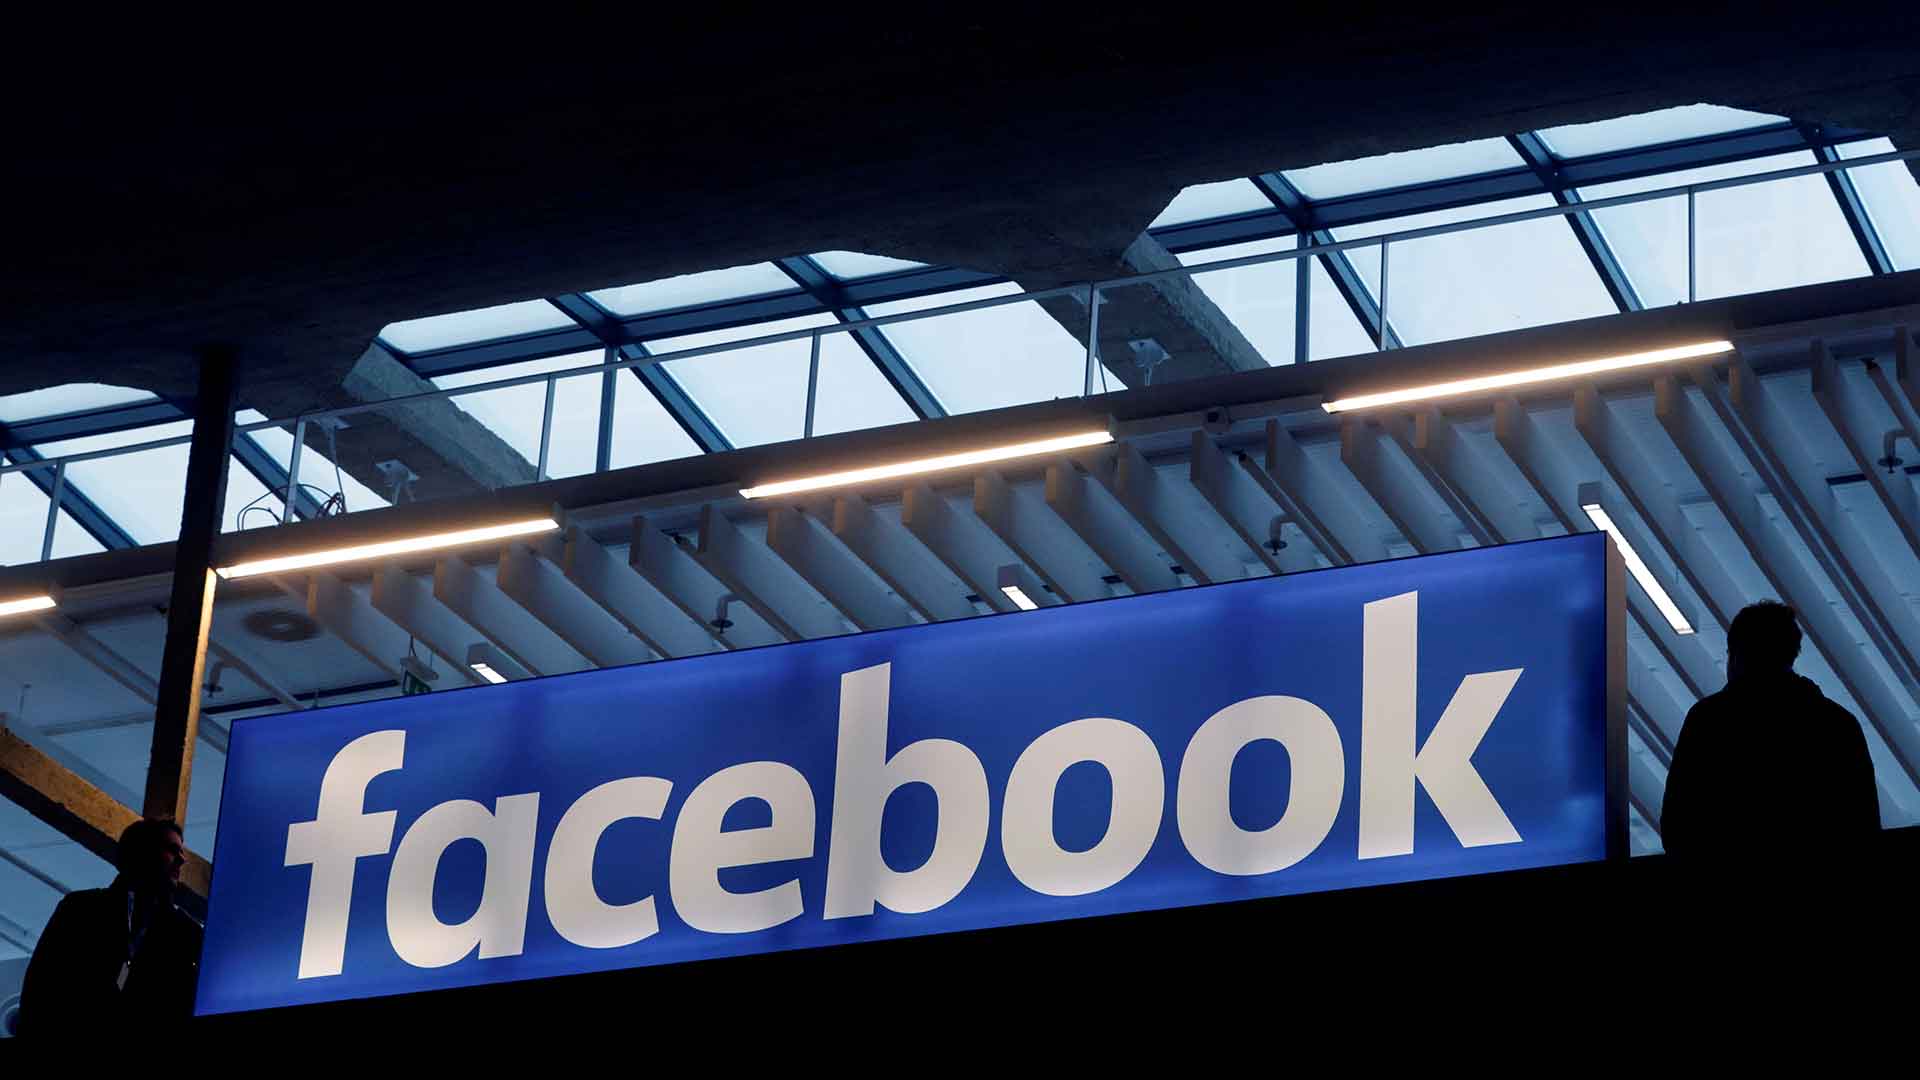 Facebook abre unas nuevas oficinas en Londres que crearán 800 empleos